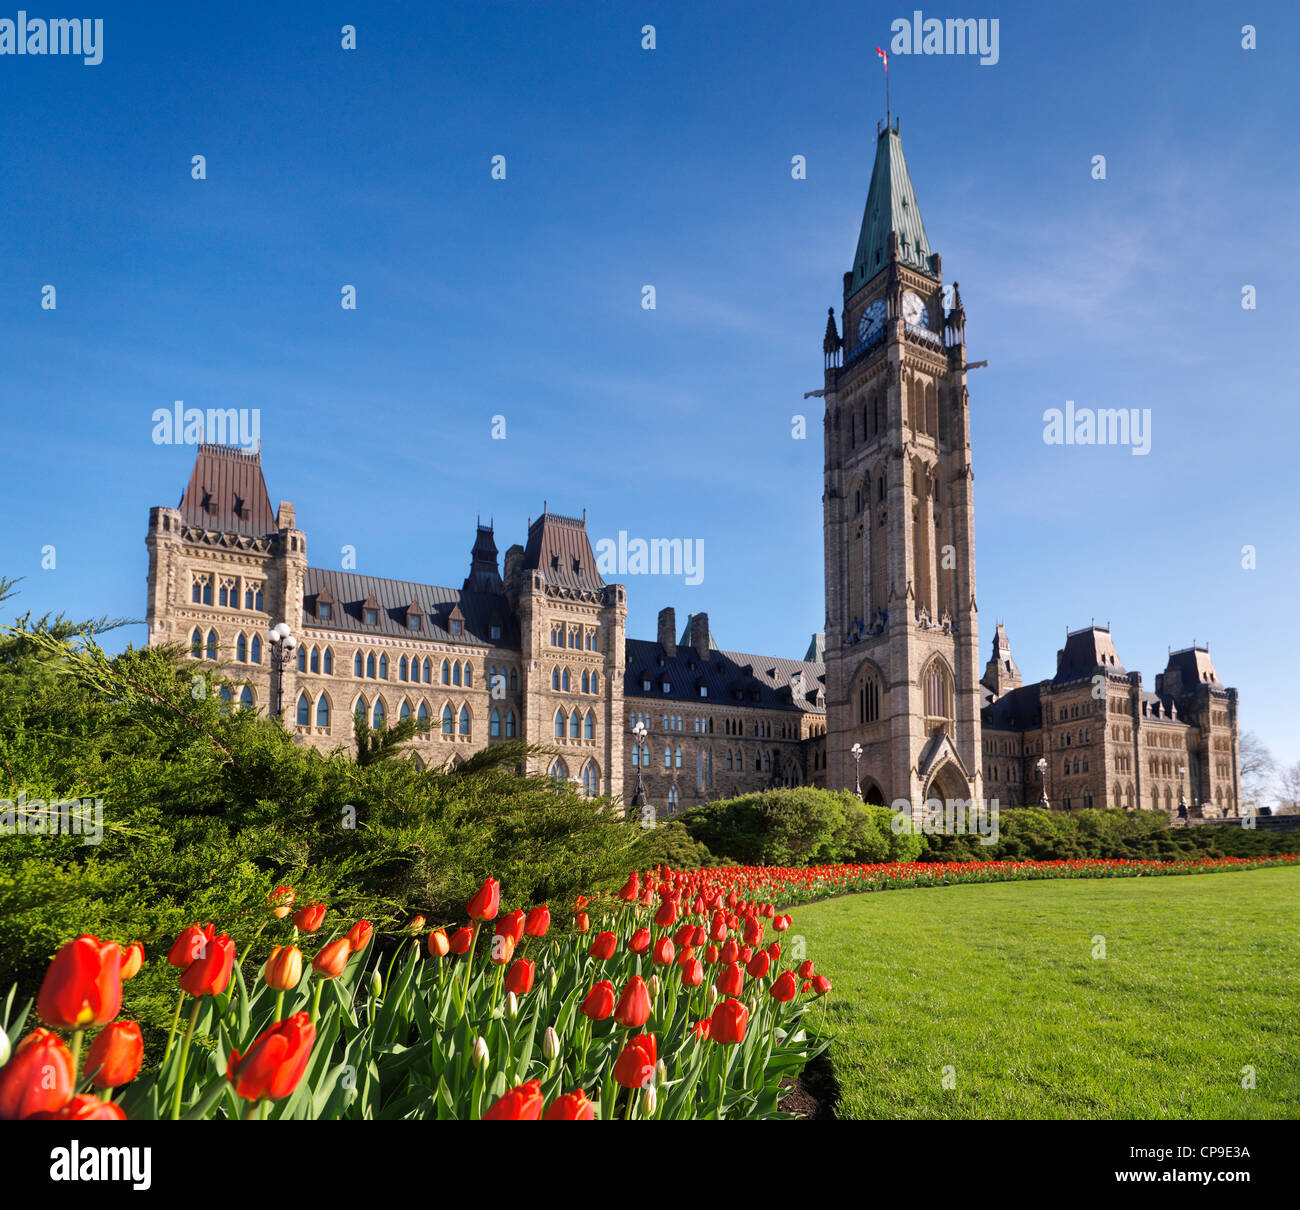 Tulipani rossi davanti al Palazzo del Parlamento a Ottawa. Tulip festival. Ontario, Canada primavera SCENIC. Focus su i tulipani Foto Stock